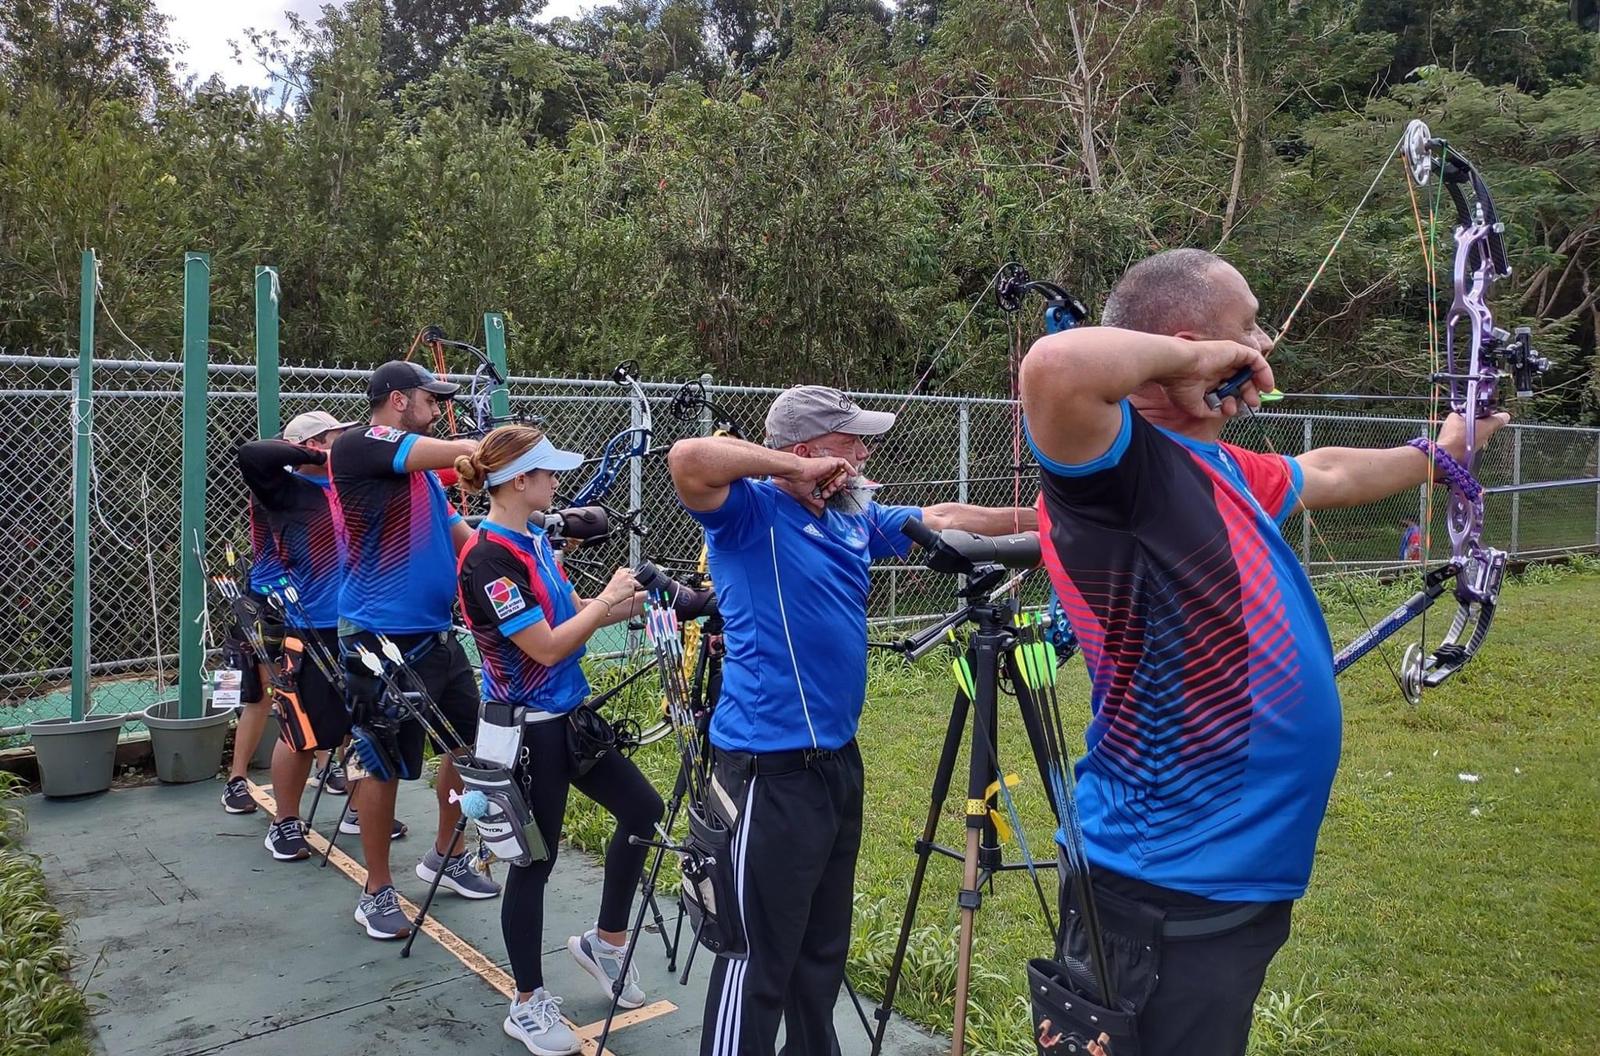 Comienzan las Preparaciones para el Puerto Rico Archery Cup